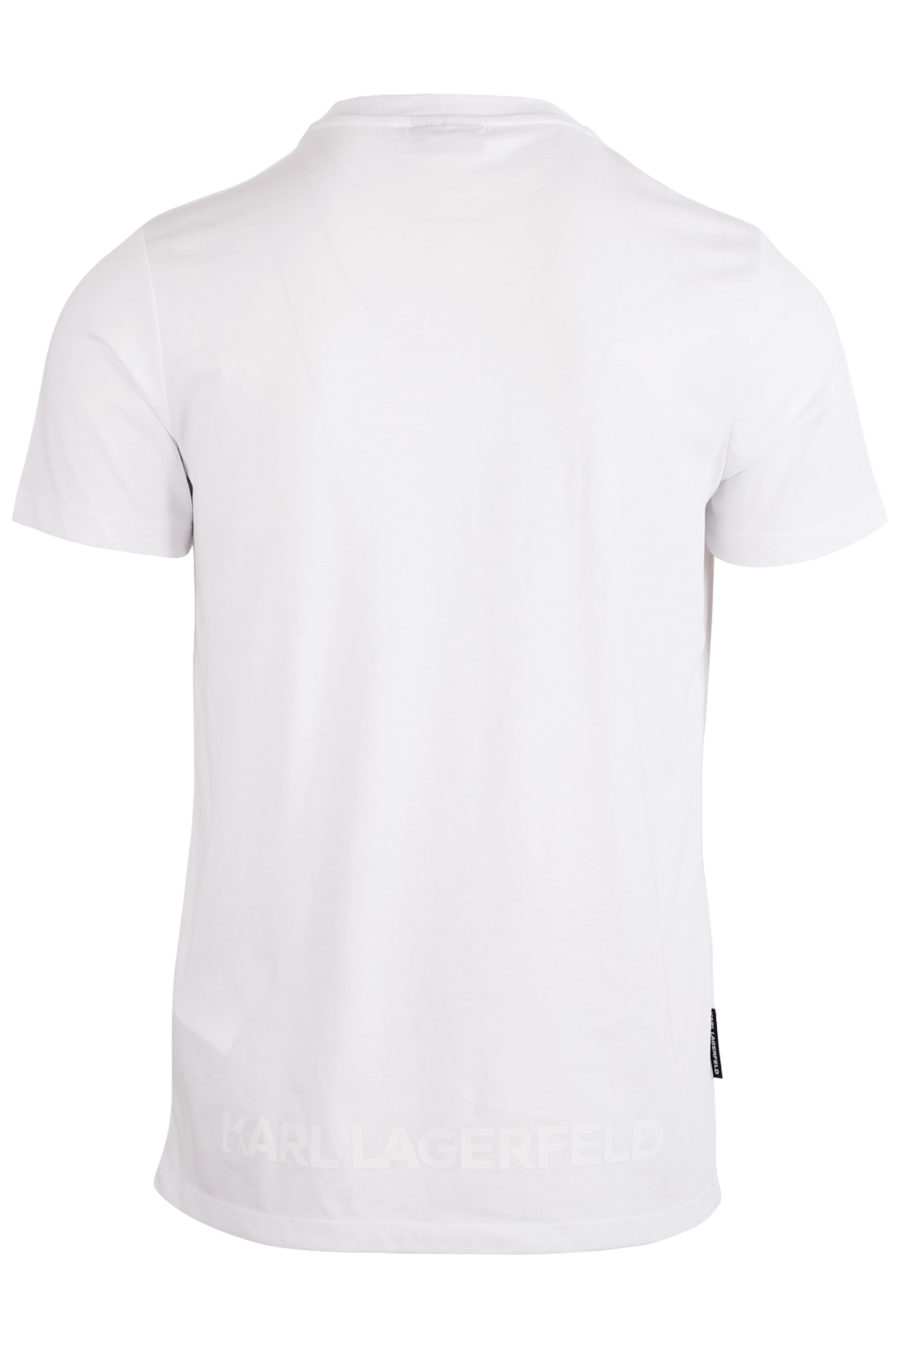 T-shirt blanc avec silhouette de créateur et logo dans le dos - copie IMG 8117